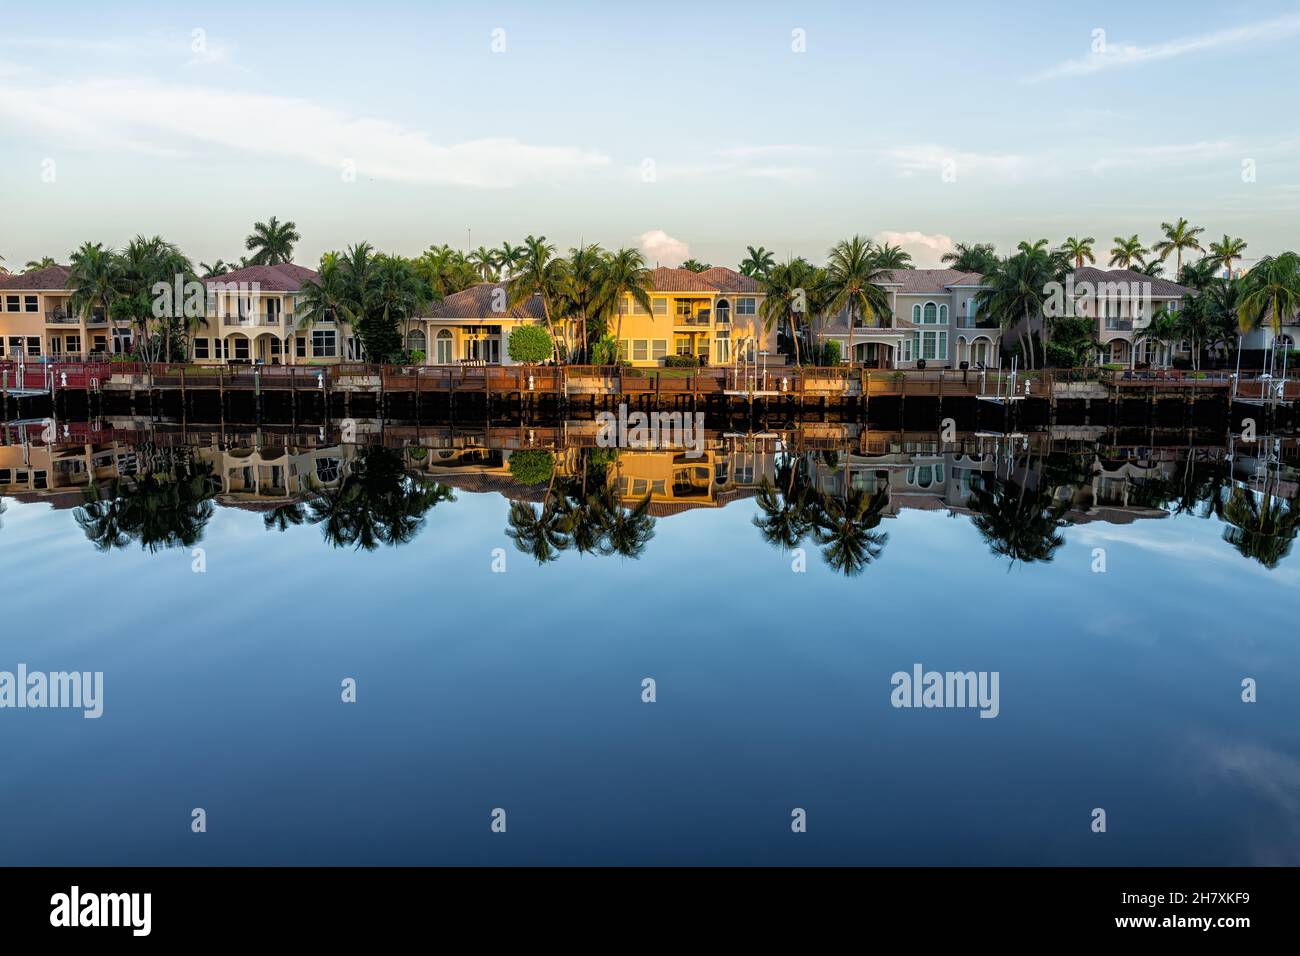 Plage de Hollywood au nord de Miami, Floride avec canal d'eau Intracoastal rivière Stranahan et vue sur le front de mer propriété moderne demeures villas Wi Banque D'Images